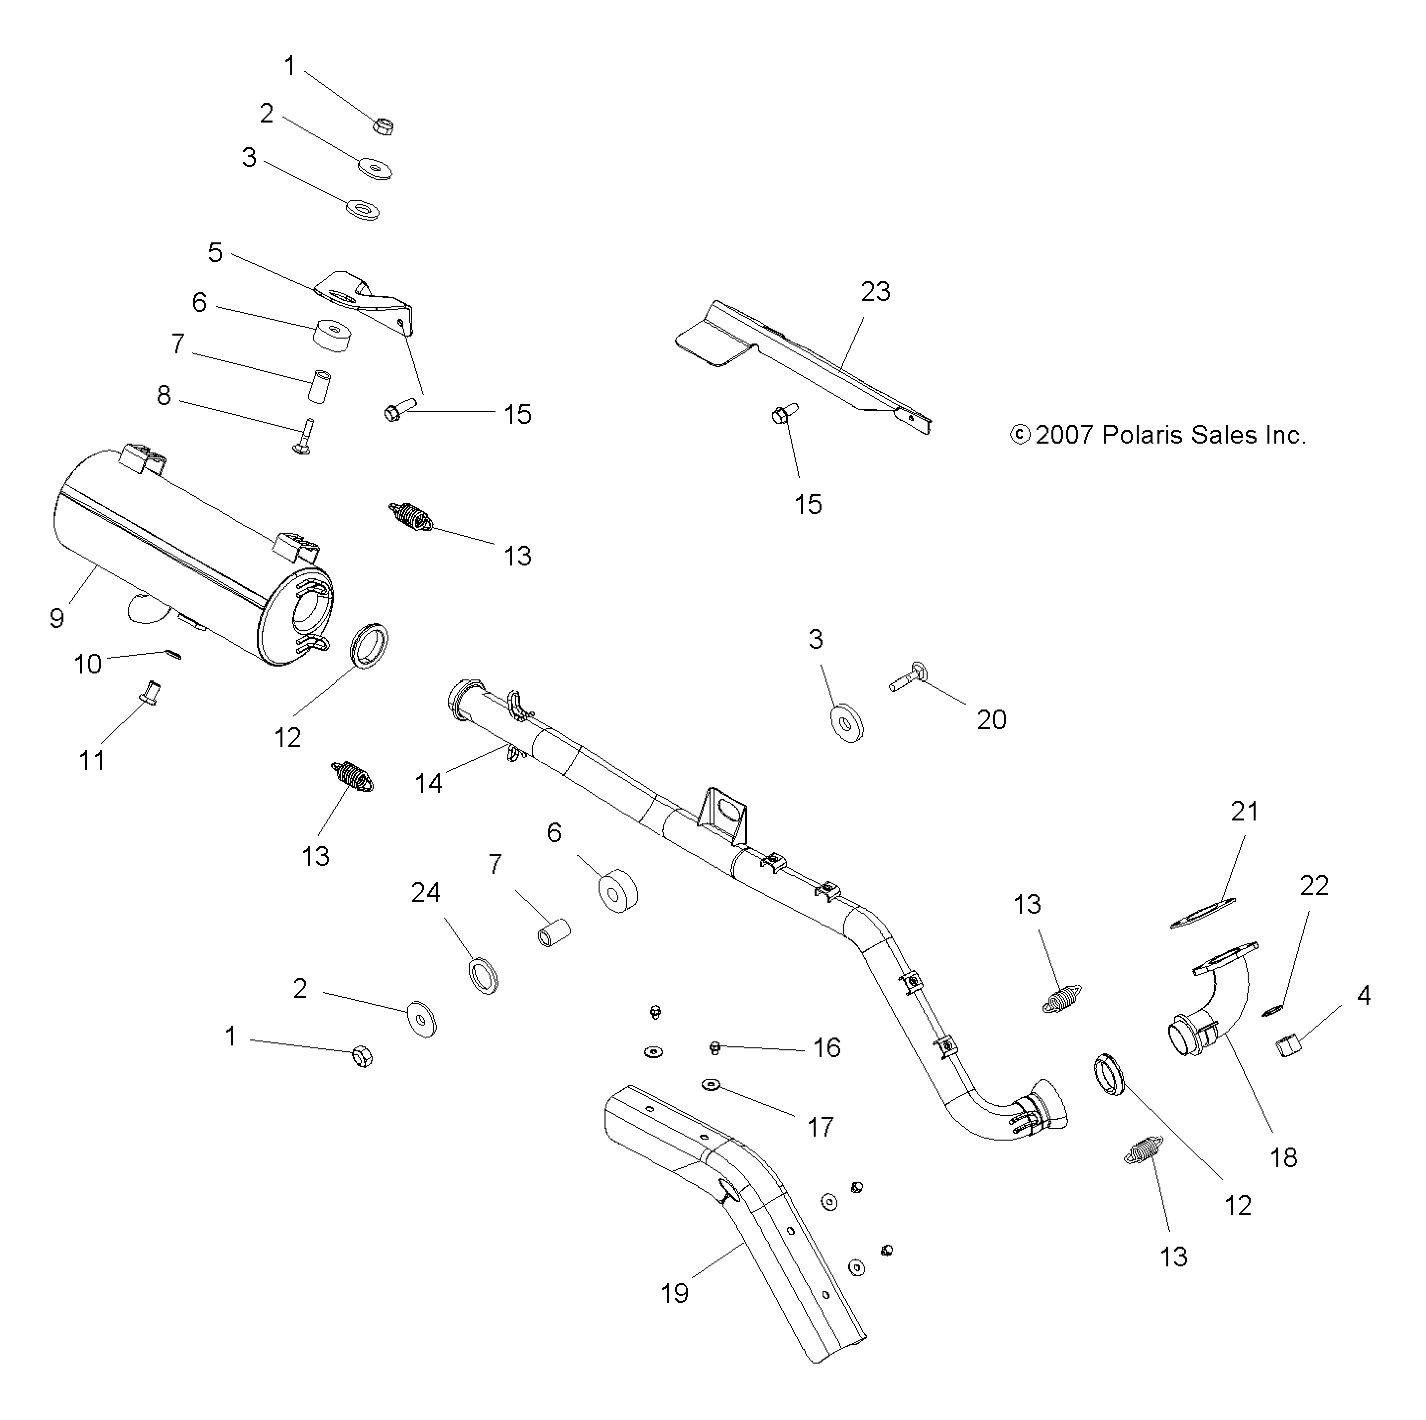 Foto diagrama Polaris que contem a peça 1261611-489